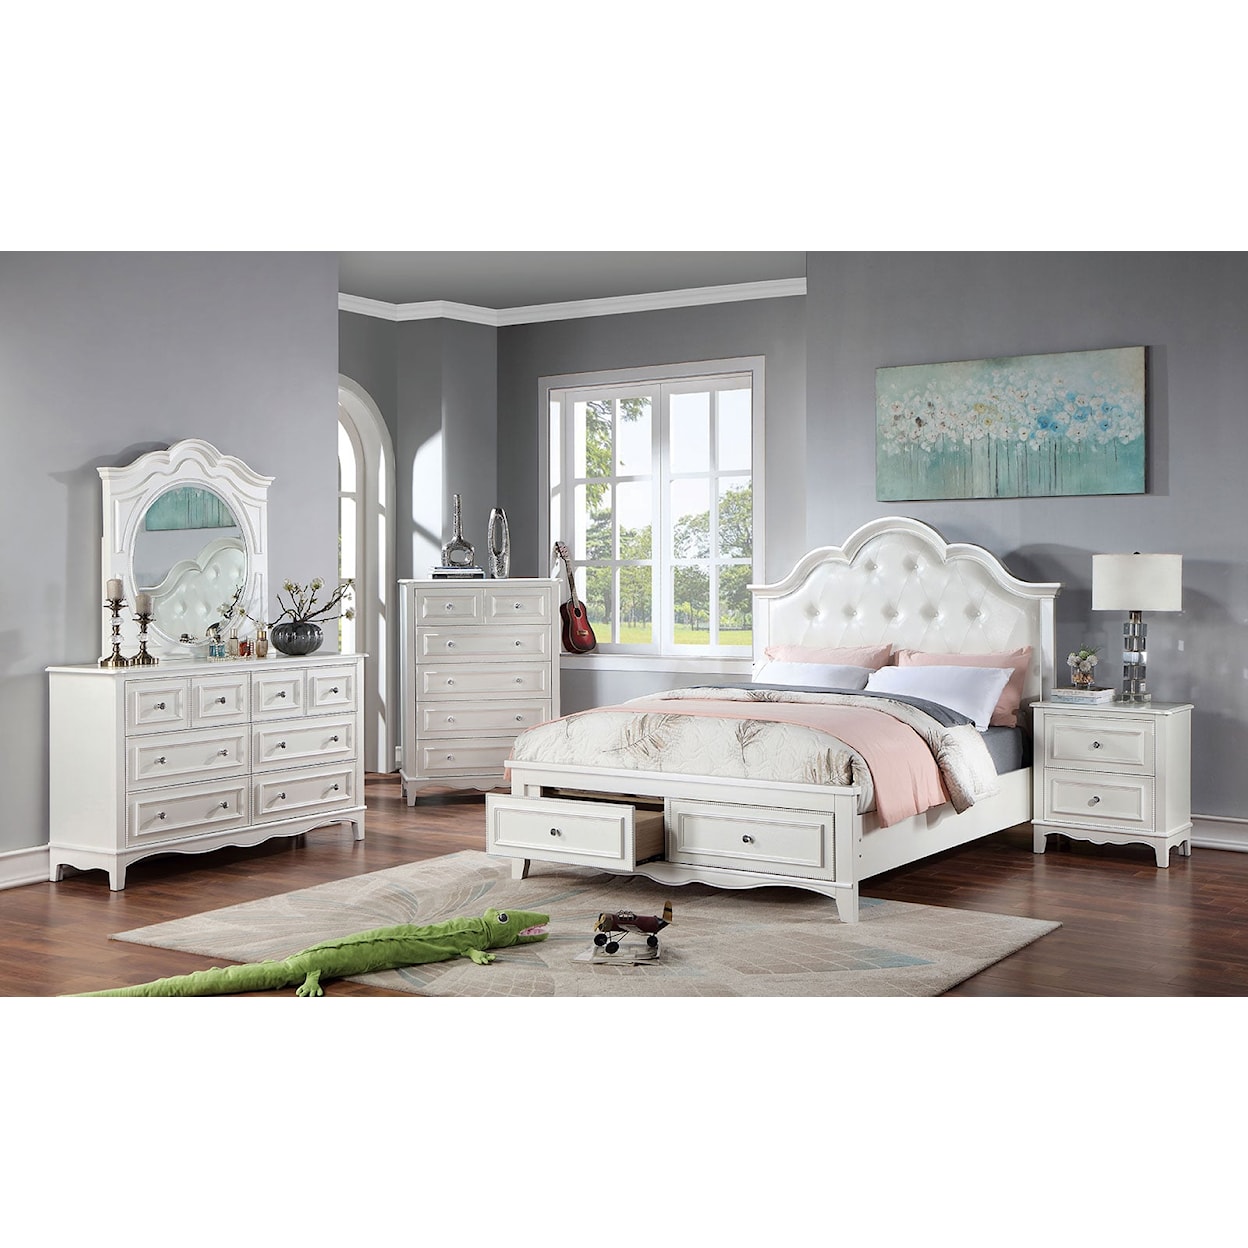 Furniture of America CADENCE 5-Piece Queen Bedroom Set